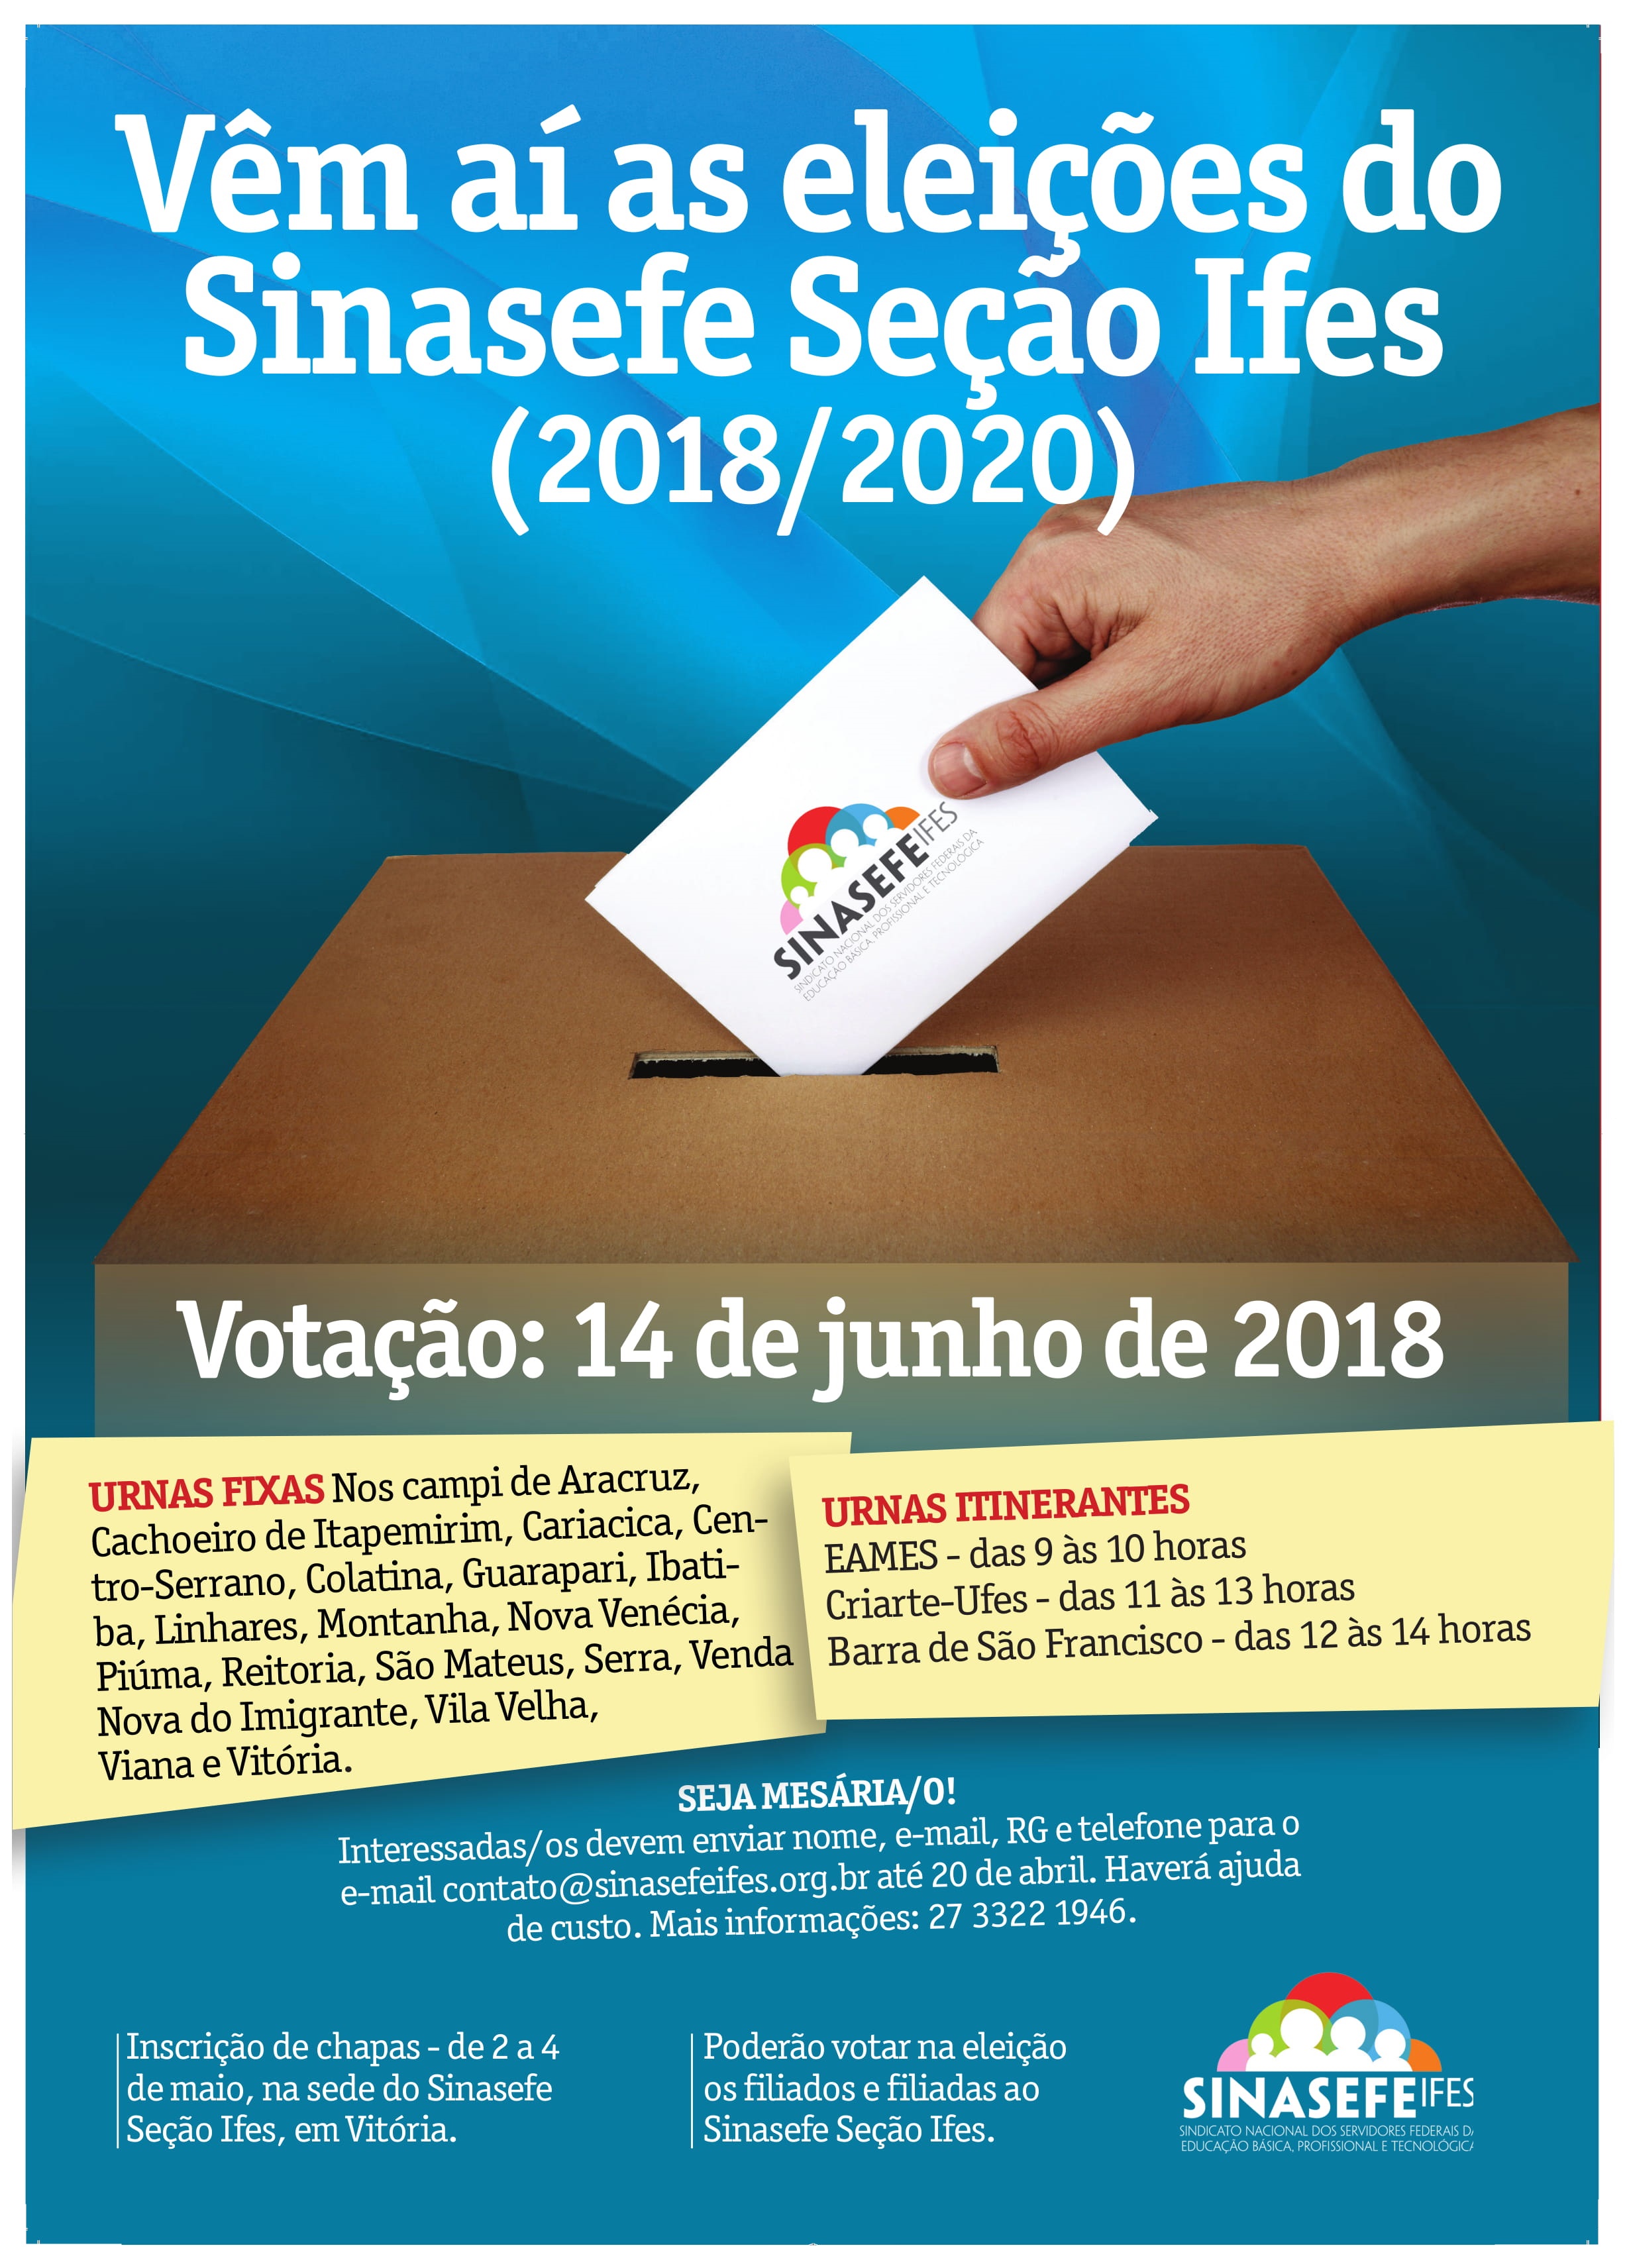 Eleição do Sinasefe Seção Ifes será no dia 14 de junho de 2018